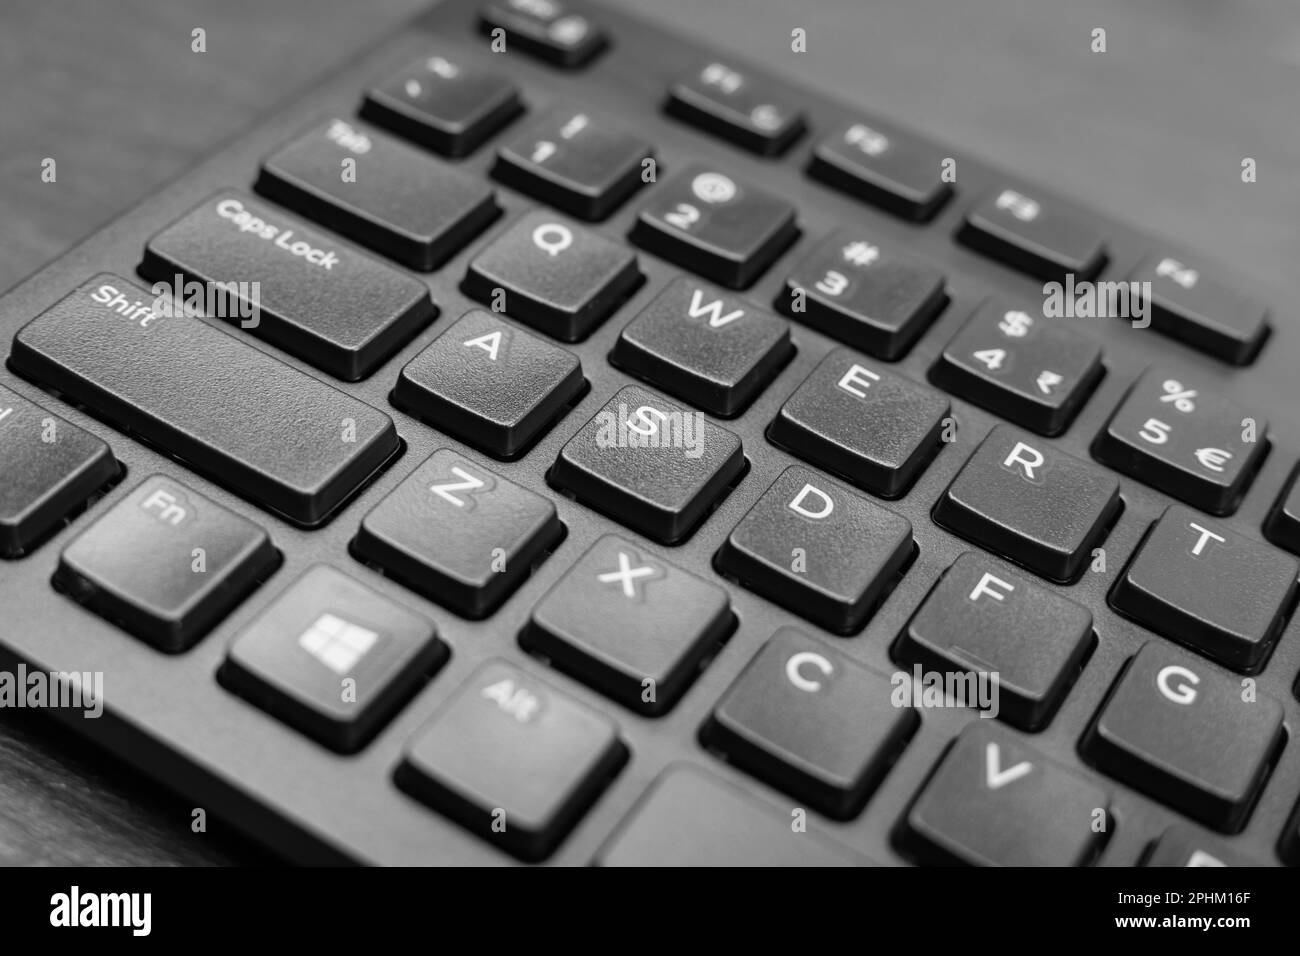 Schwarze Tastaturtasten im Nahbereich. Makroaufnahme von Tastaturtasten, pc-Hotkey, Foto mit Tastenanschlägen Stockfoto